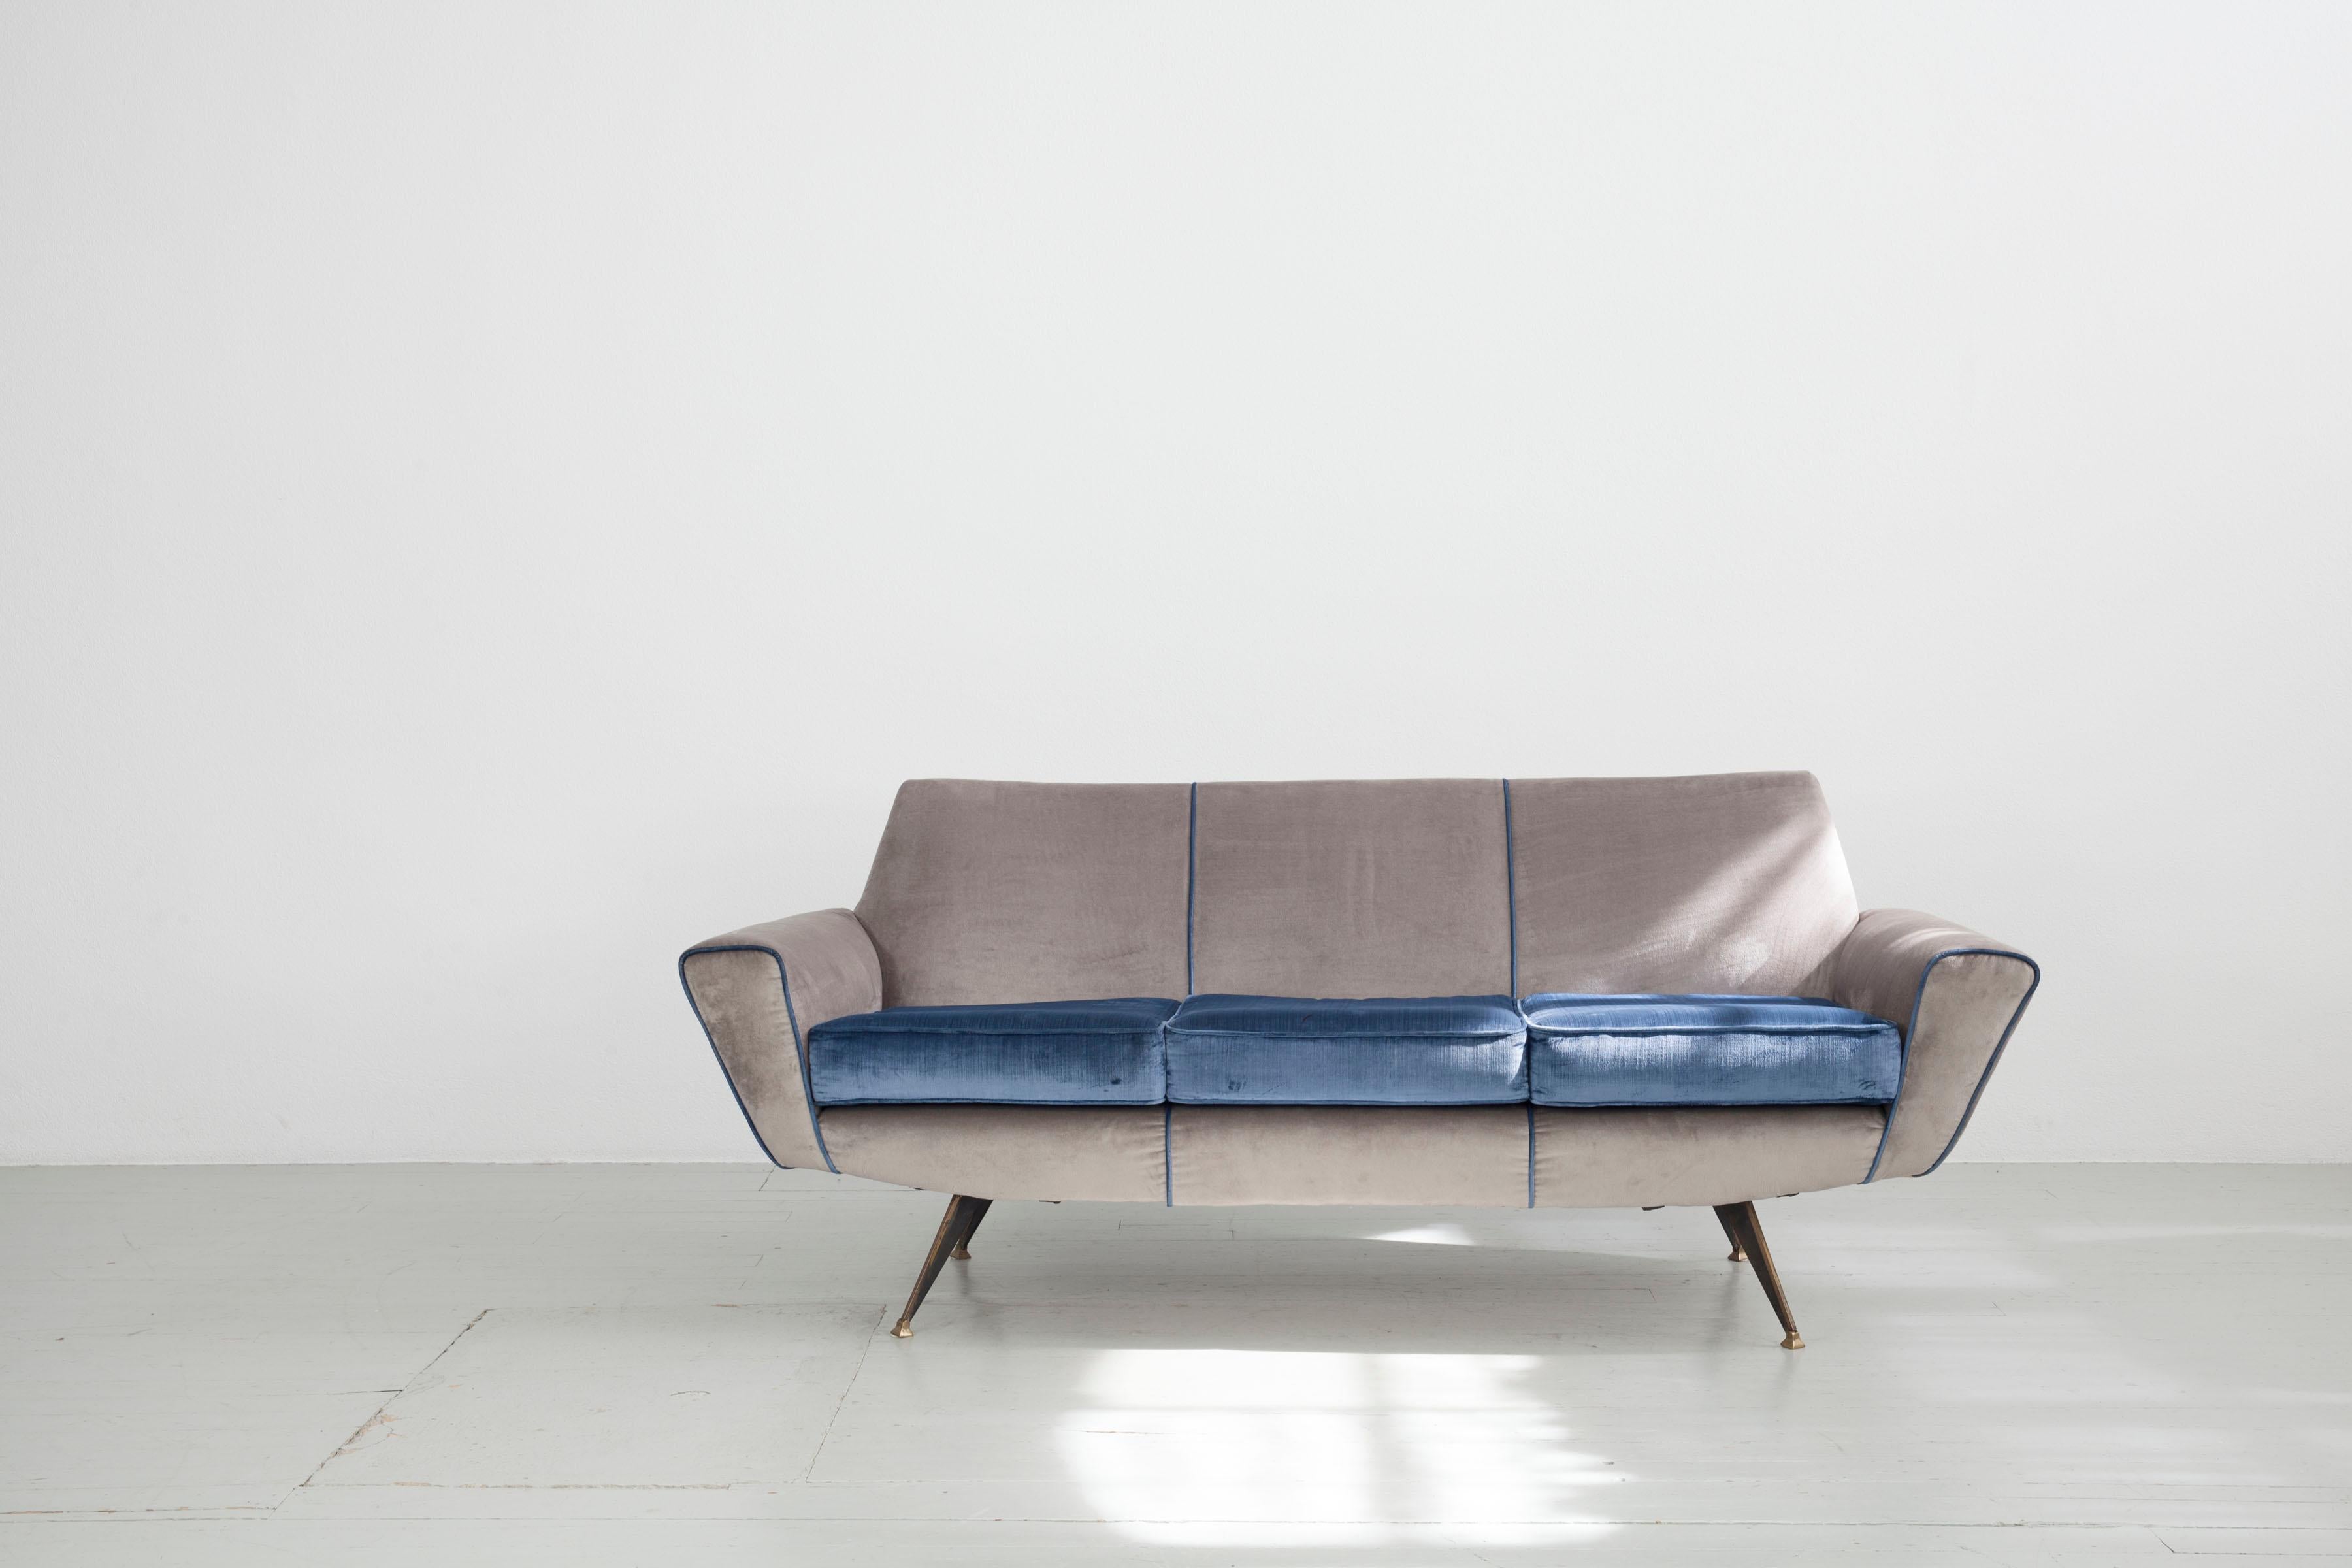 3 Sitzer Sofa
Design Lenzi, Studio Tecnico A.P.A. Quarrata- Pistoia, Modell '548' 1950s.
Die Polsterung mit blau grauen Samtbezug hat leichte Flecken. Die schwarz lackierten Eisenbeine sind mit Messing beschlagen.

Sehr gerne senden wir Ihnen